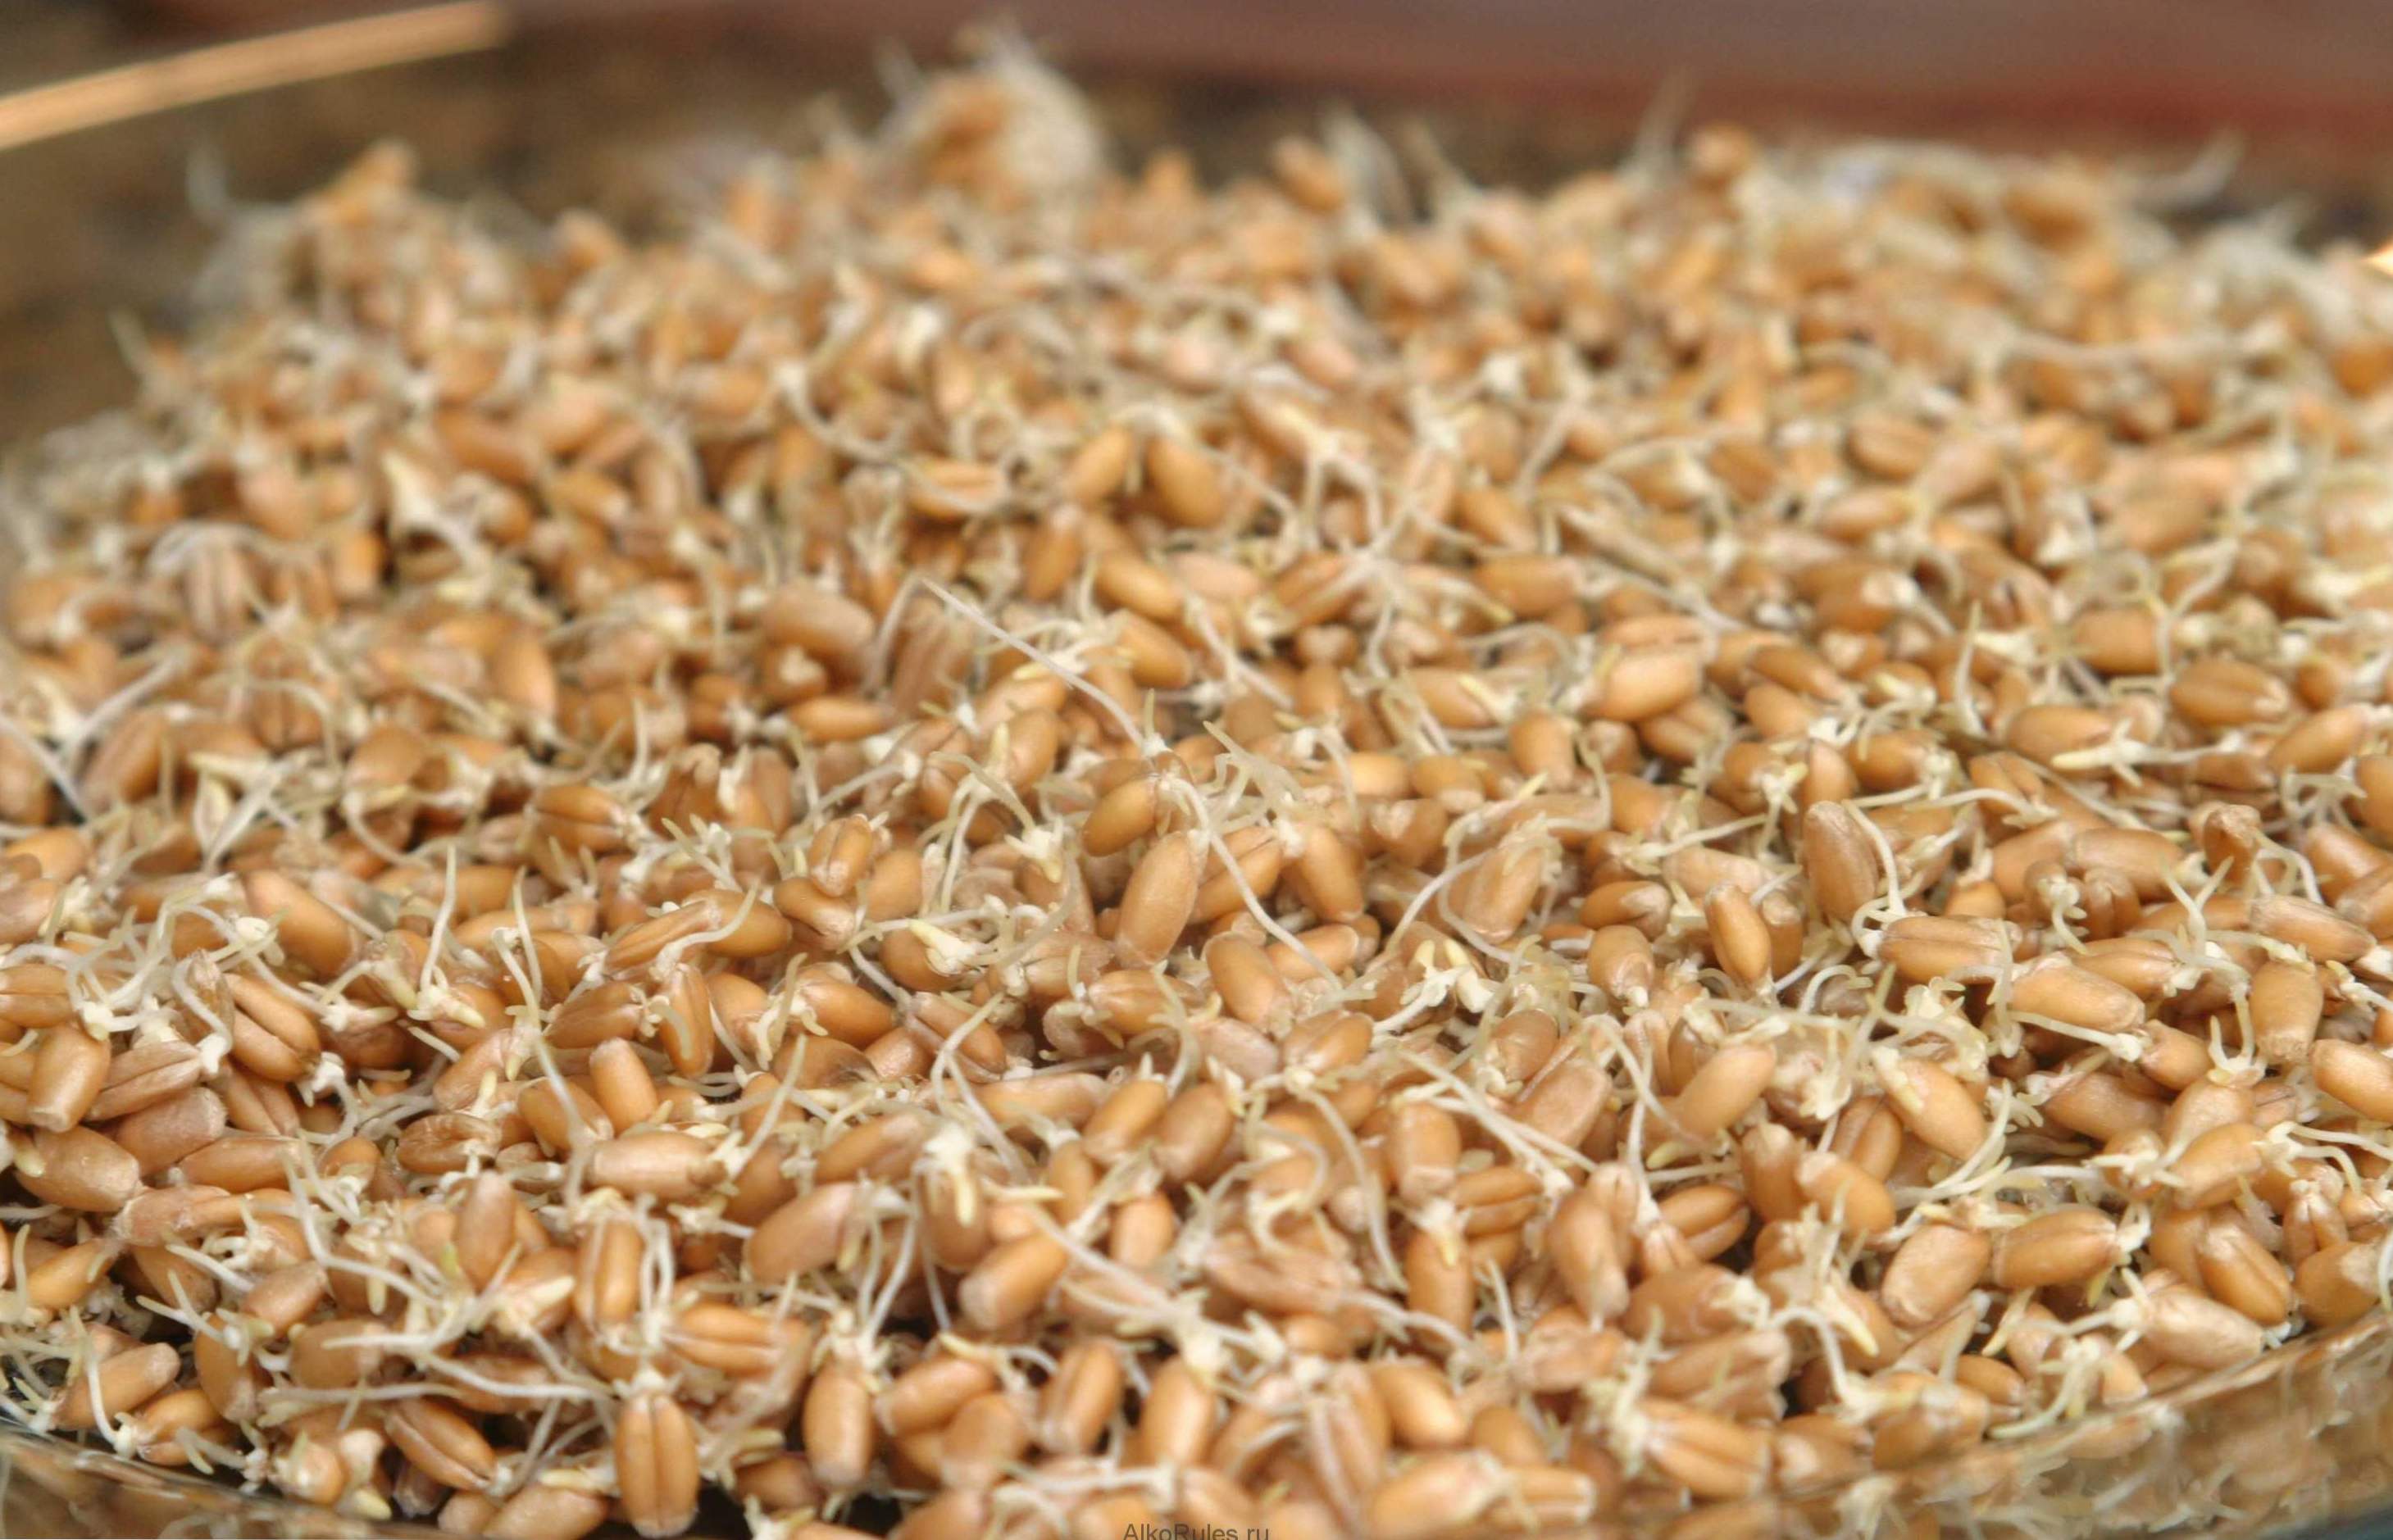 Germinated pšenica - koristi i štete, kako klijati i koristiti kod kuće?